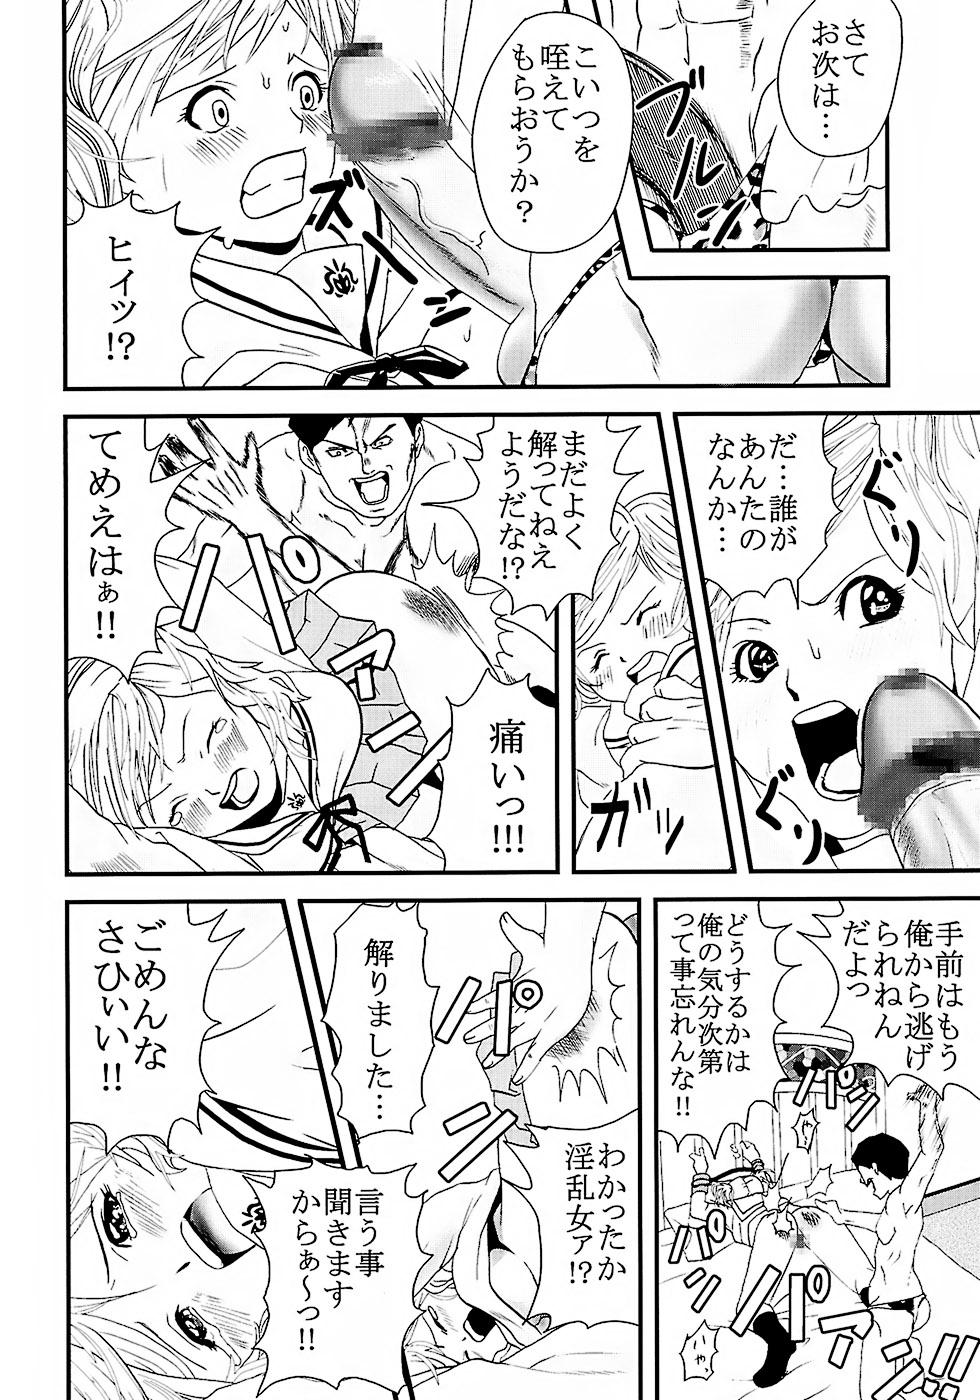 Small Chitsui Gentei Nakadashi Limited vol.2 - Hatsukoi limited Lips - Page 7